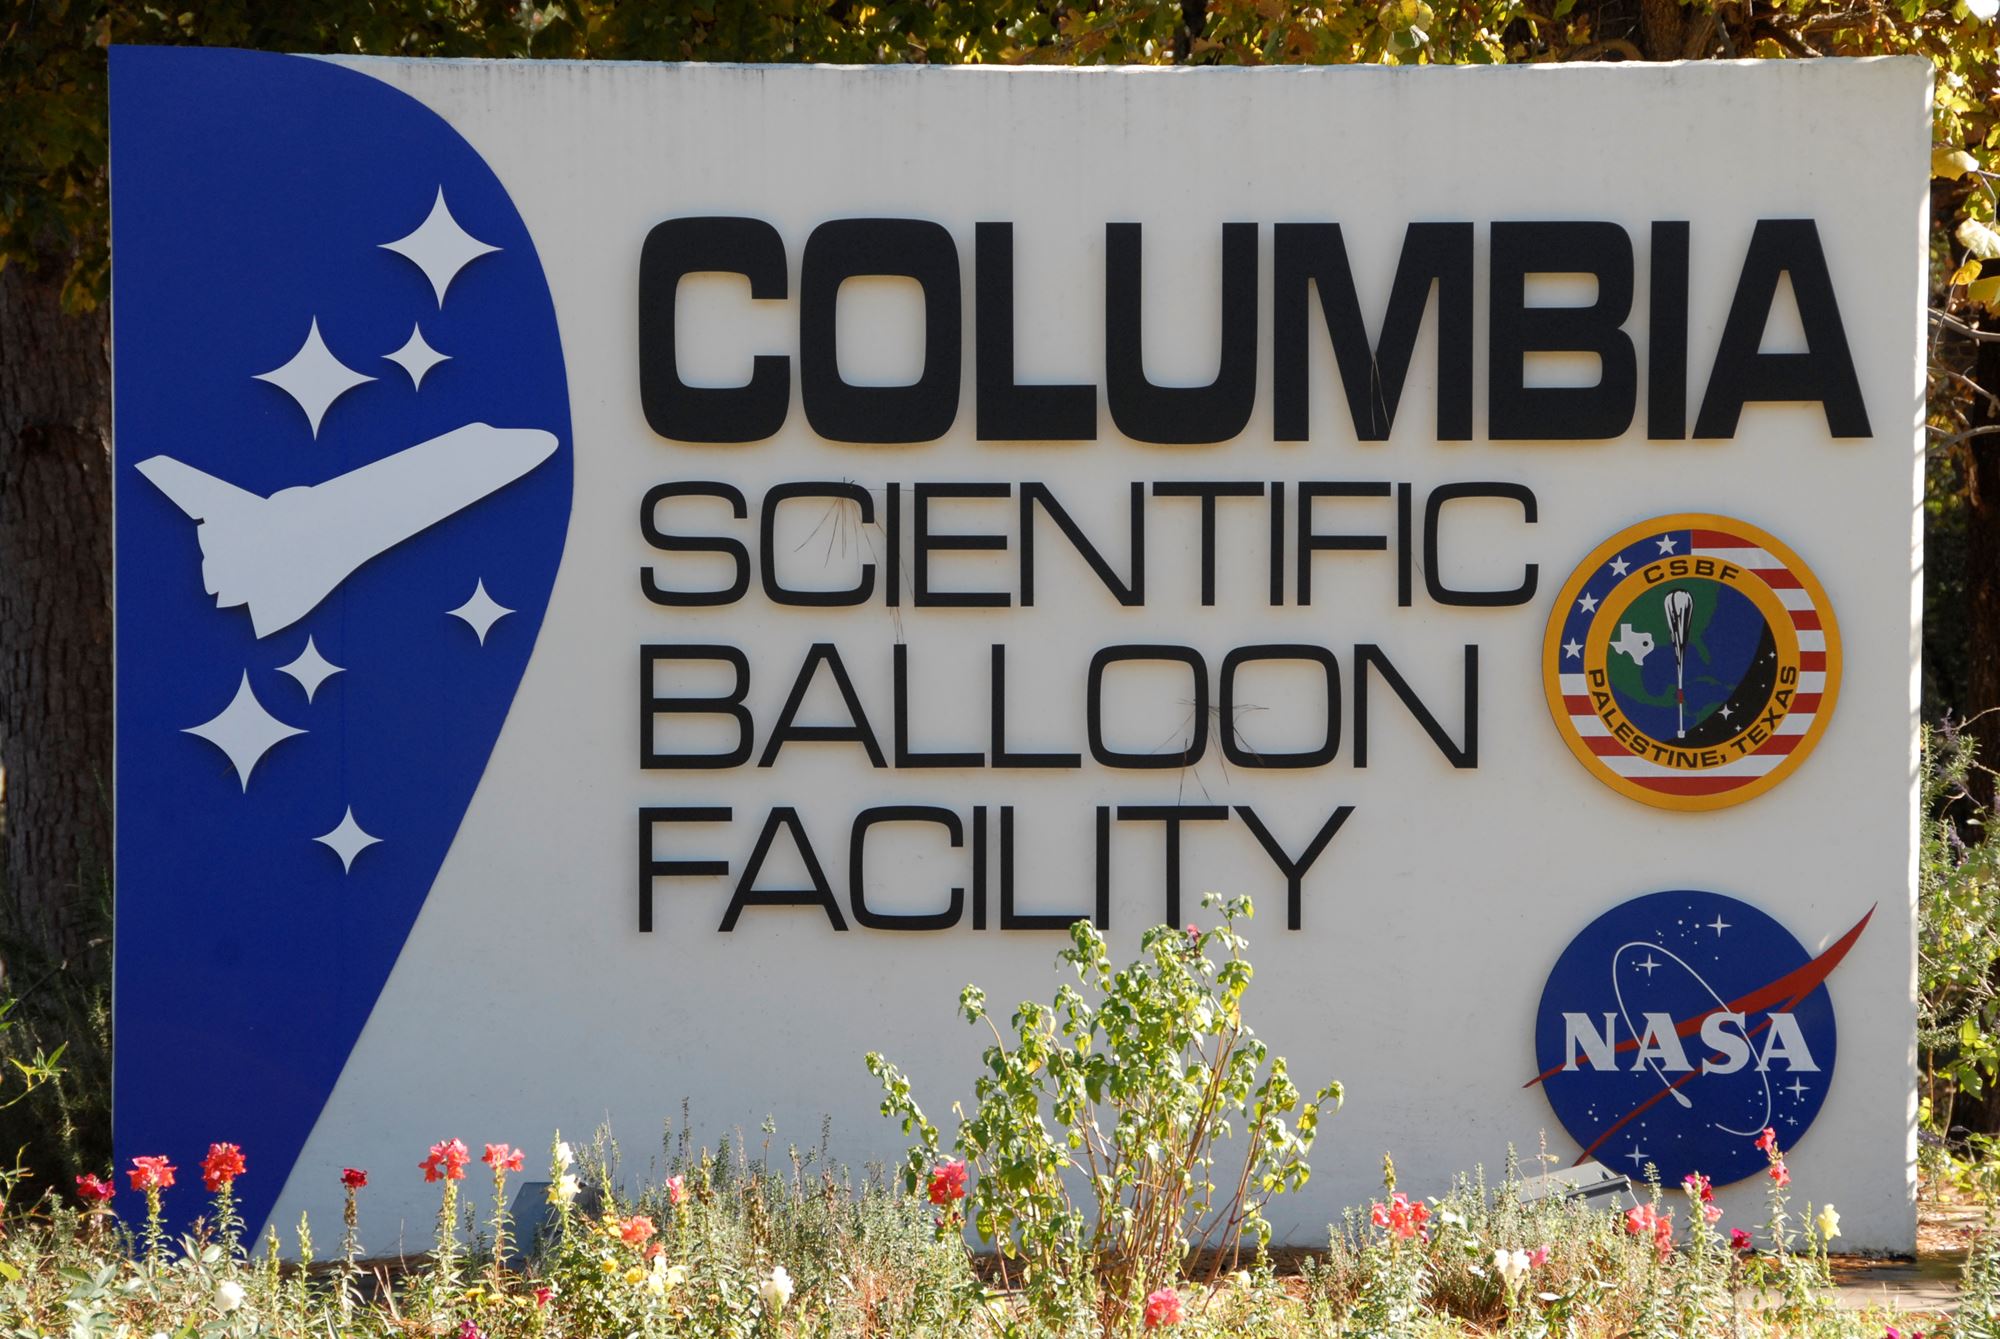 Columbia Scientific Balloon Facility